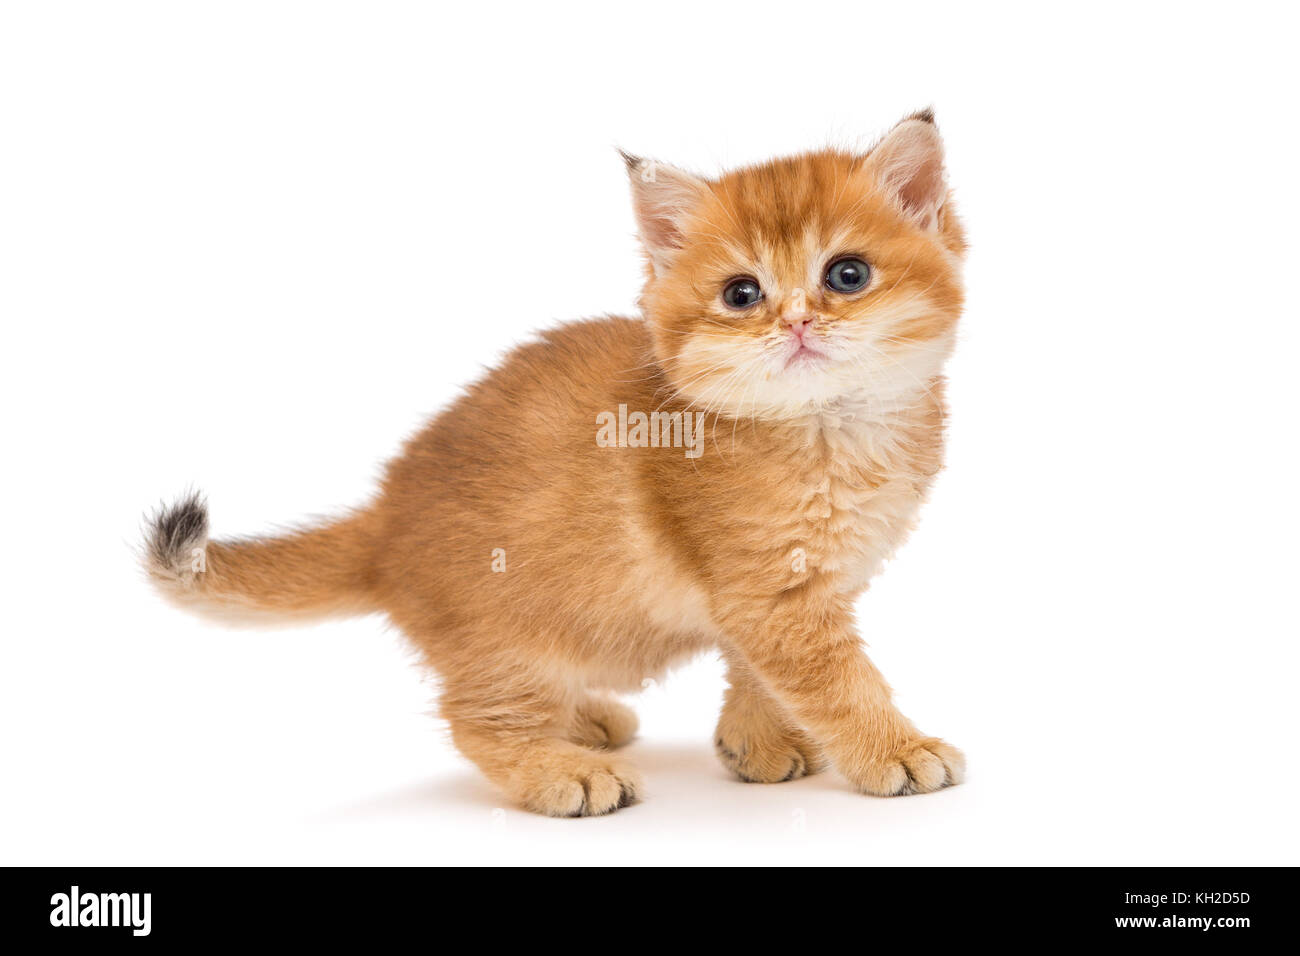 Gattino arancione immagini e fotografie stock ad alta risoluzione - Alamy